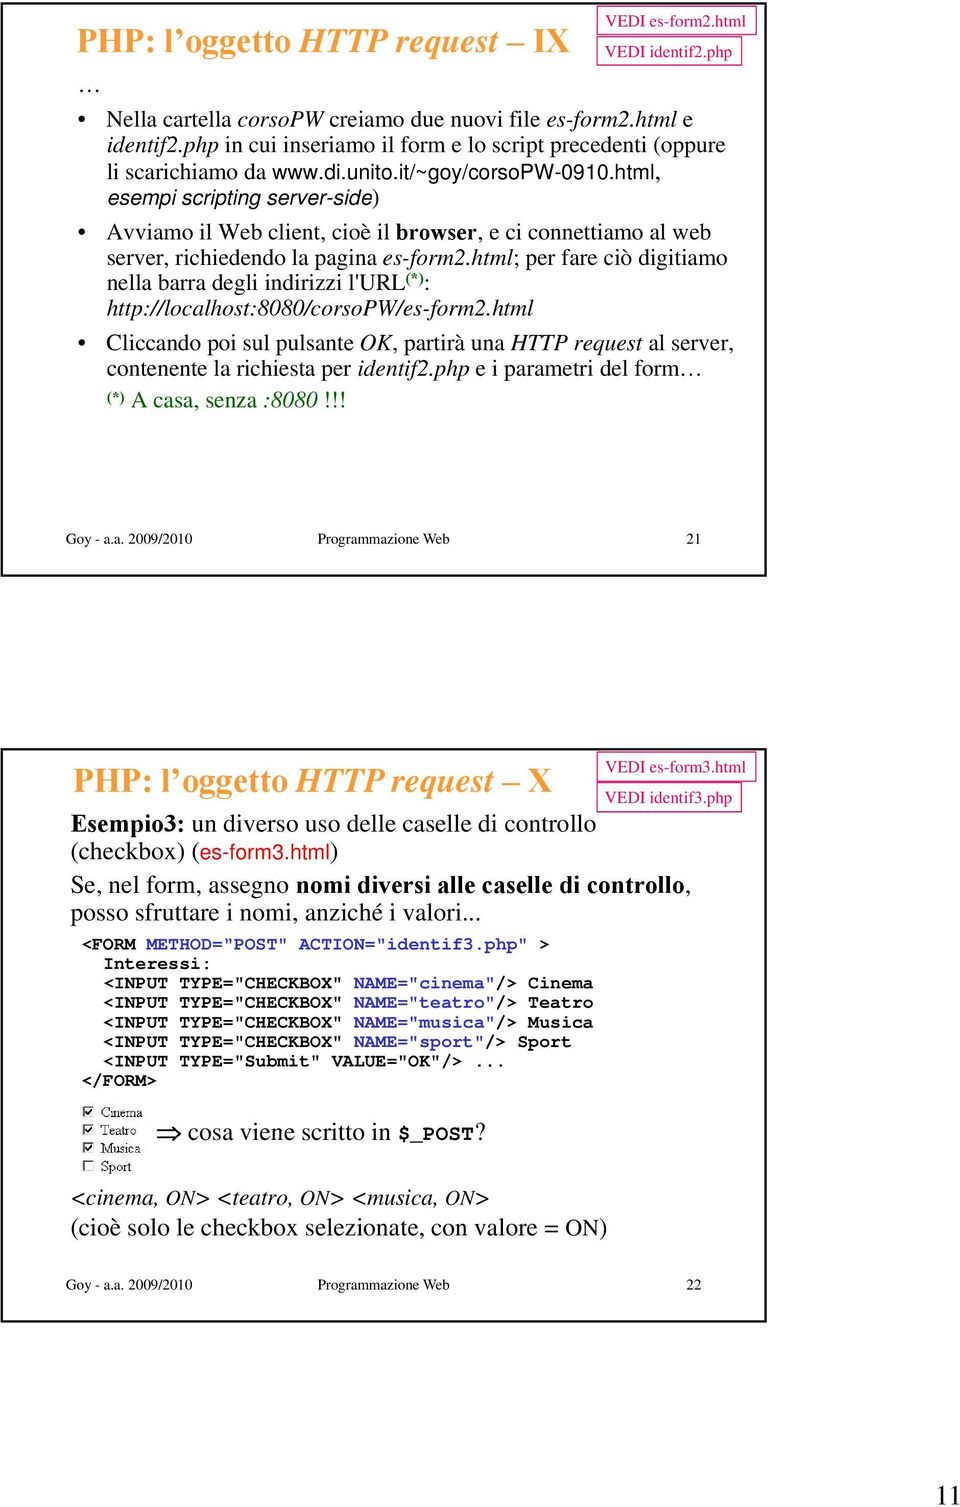 html, esempi scripting server-side) side) Avviamo il Web client, cioè il browser, e ci connettiamo al web server, richiedendo la pagina es-form2.